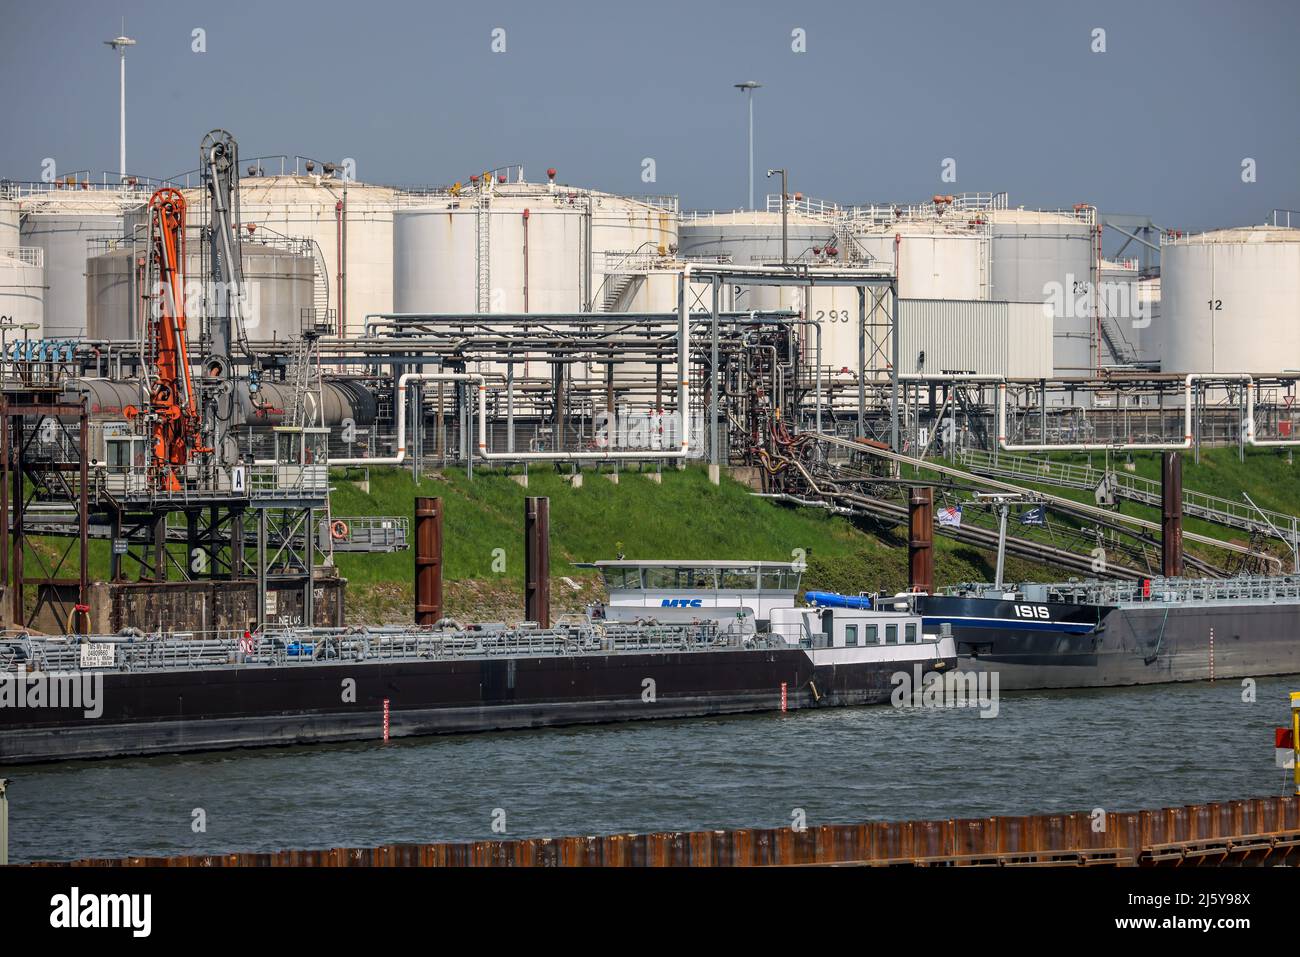 Duisburg, Rhénanie-du-Nord-Westphalie, Allemagne - Port de Duisburg, Duisburg Ruhrort, île pétrolière, tankers devant la ferme-réservoir pour les produits d'huile minérale, combustible Banque D'Images